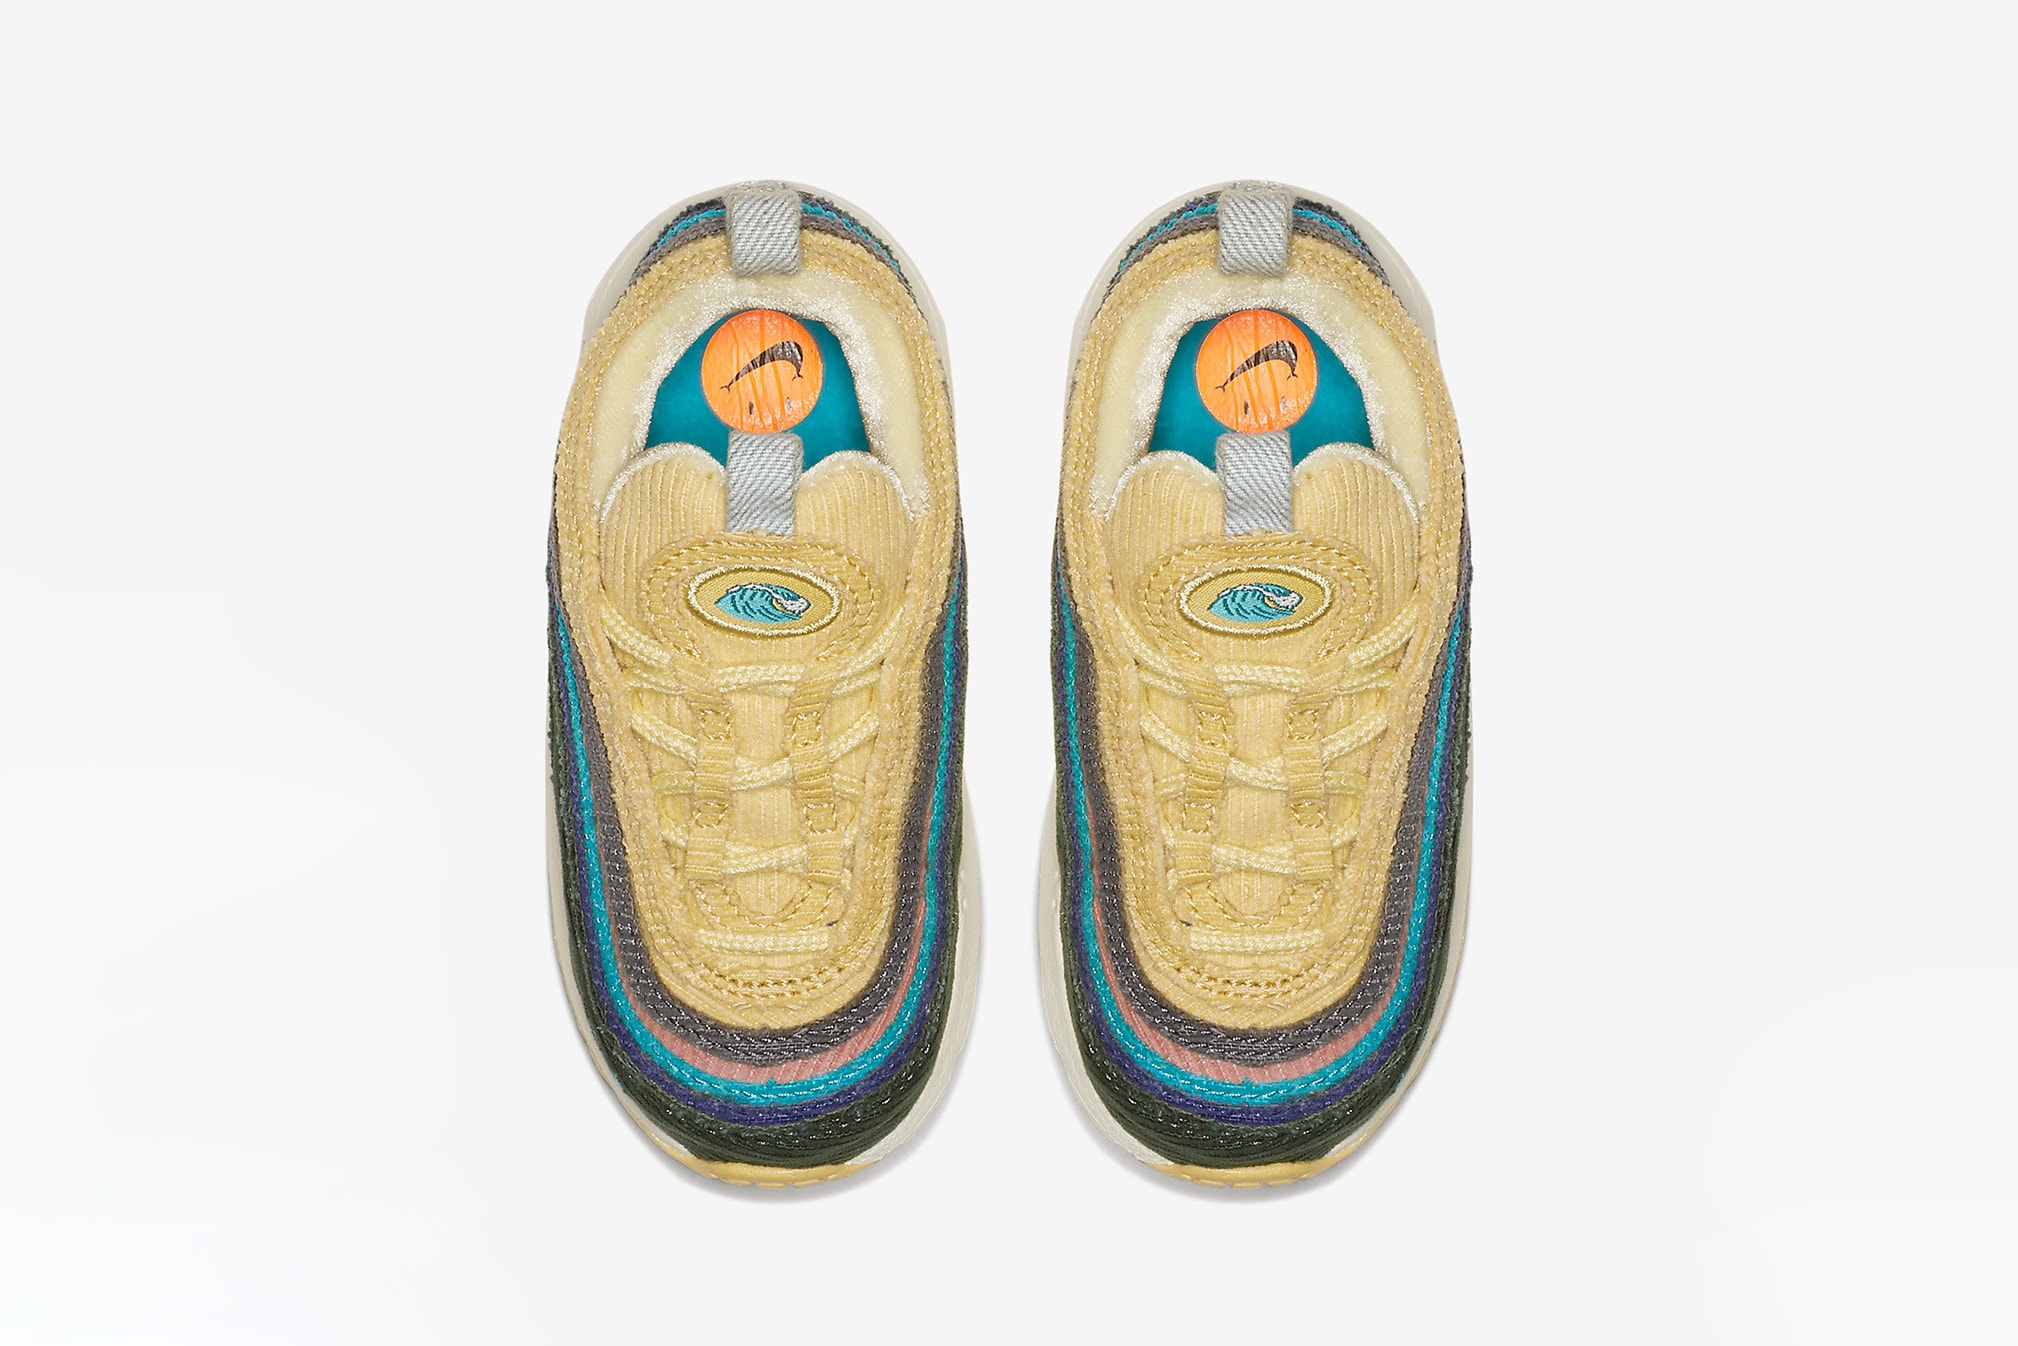 #hypekids: Sean Wotherspoon x Nike Air Max 1/97 童裝版本官方圖片釋出